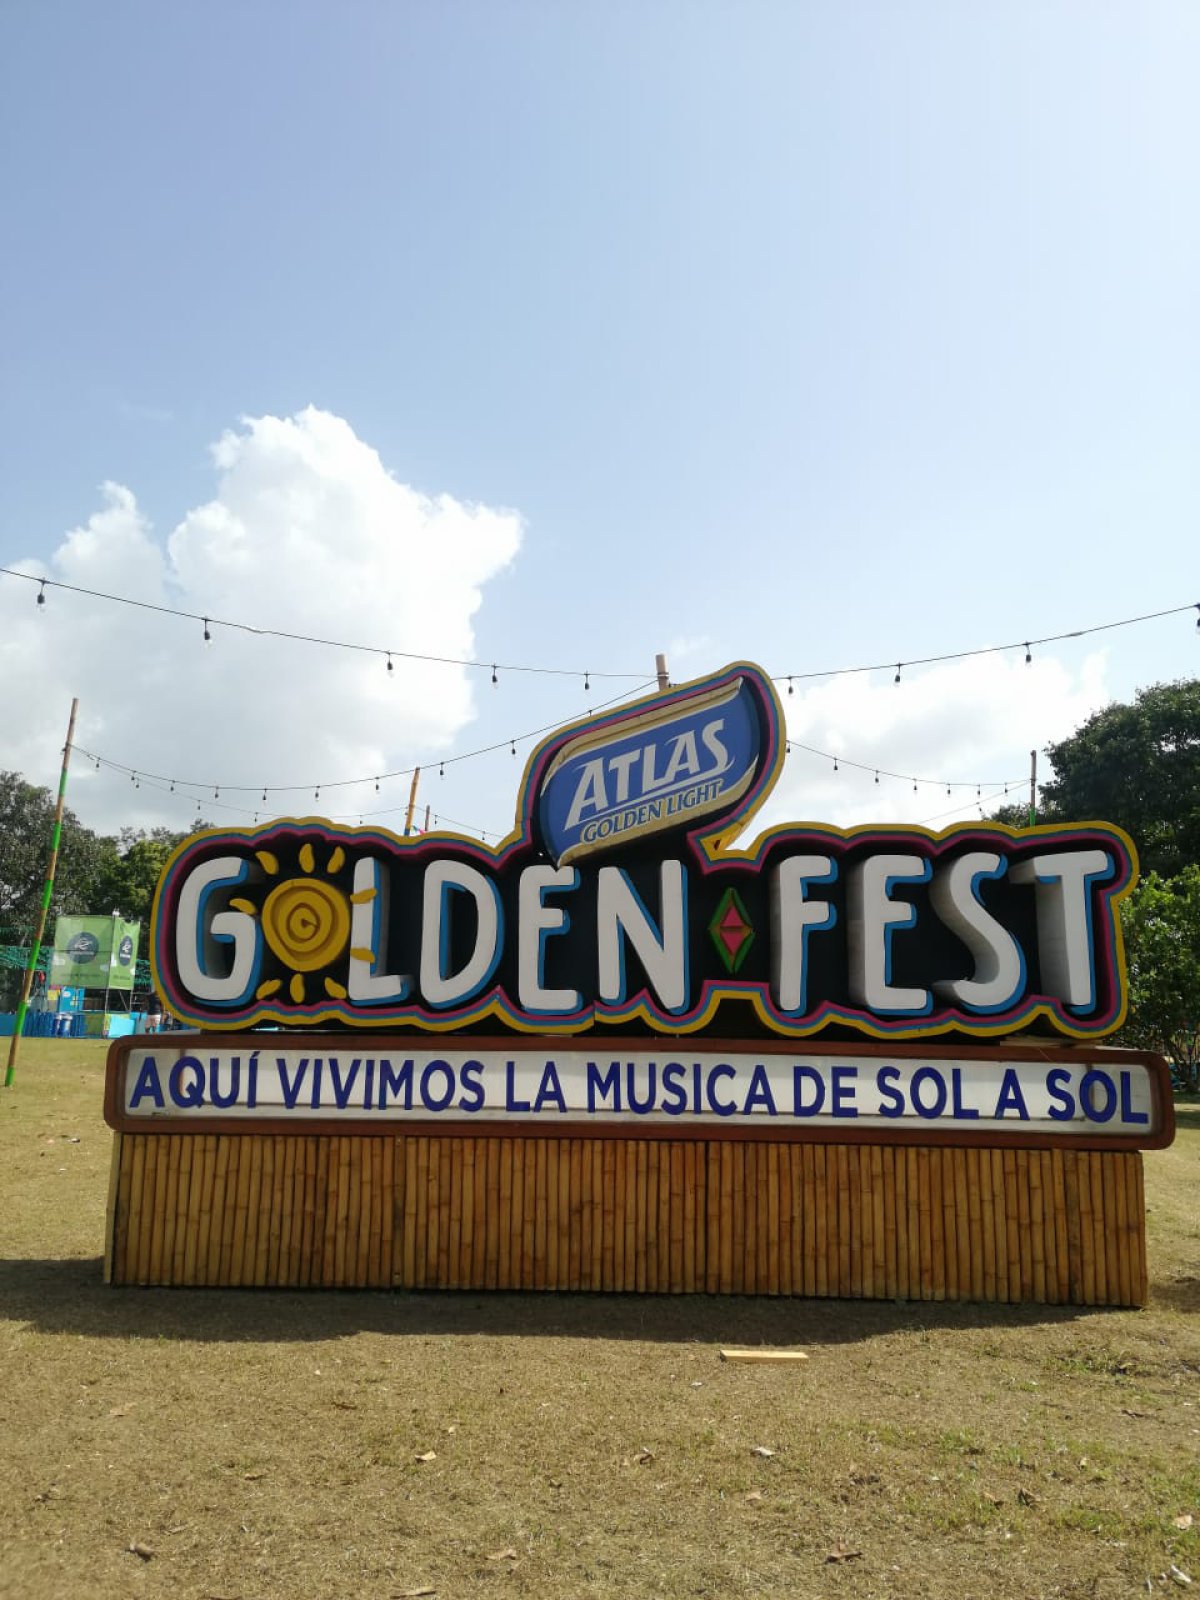 ¡Atlas Golden Fest!